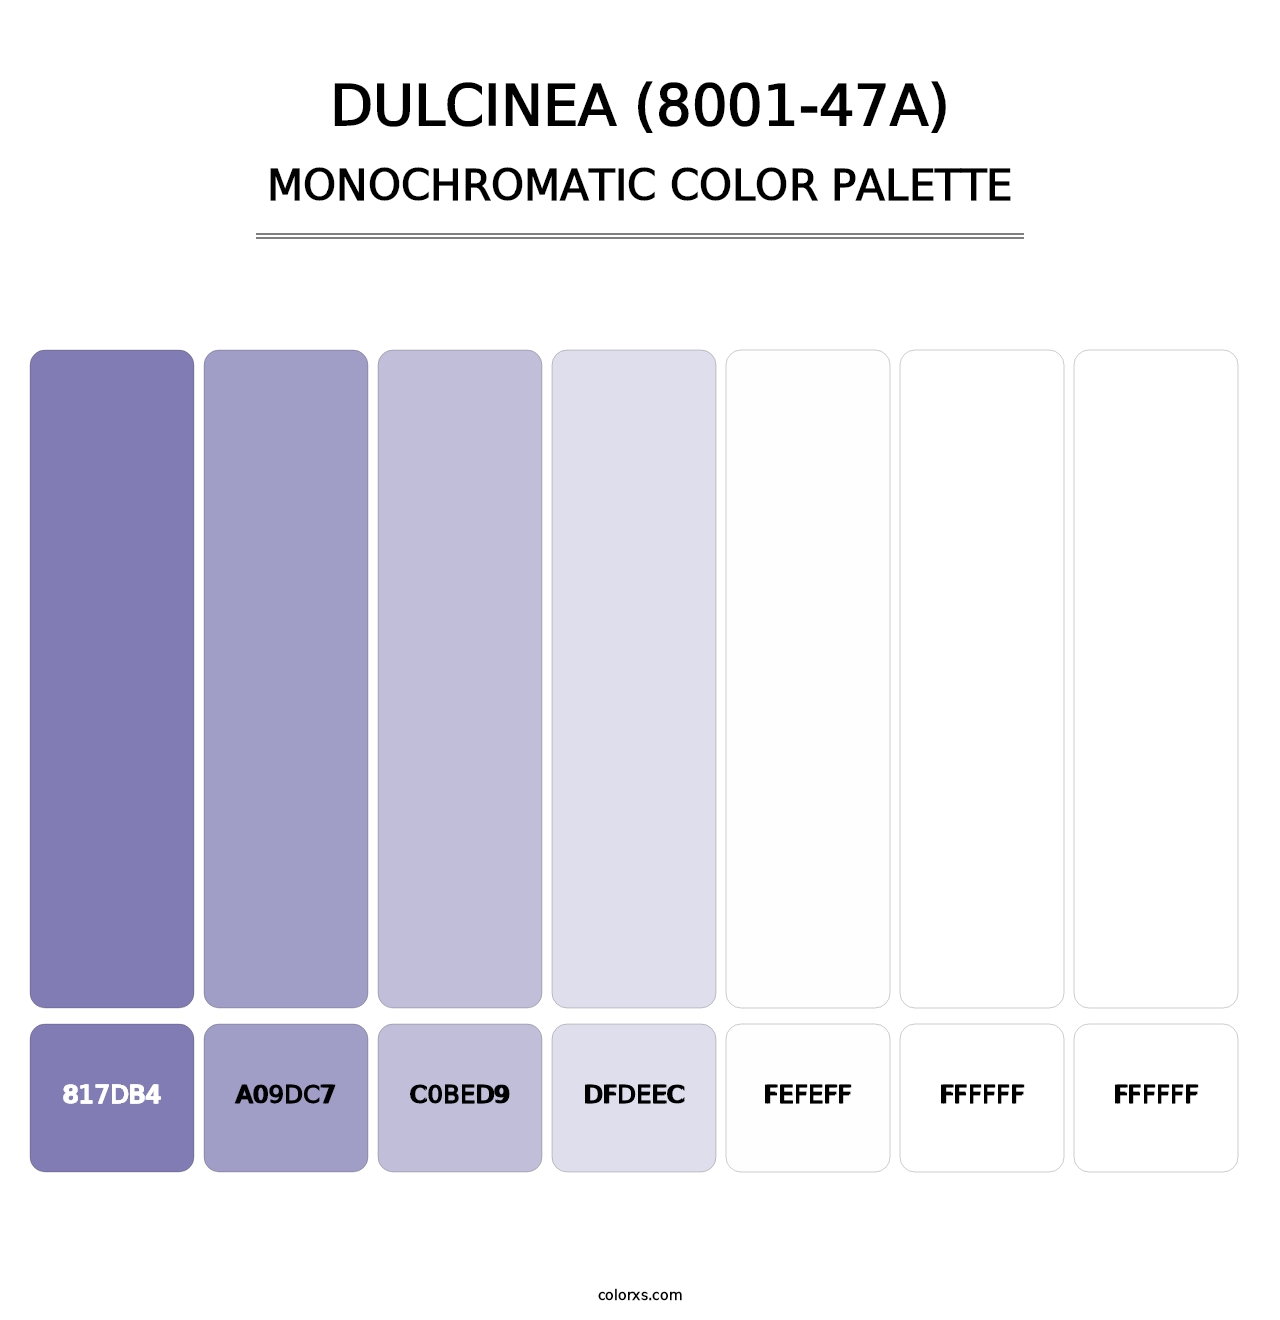 Dulcinea (8001-47A) - Monochromatic Color Palette